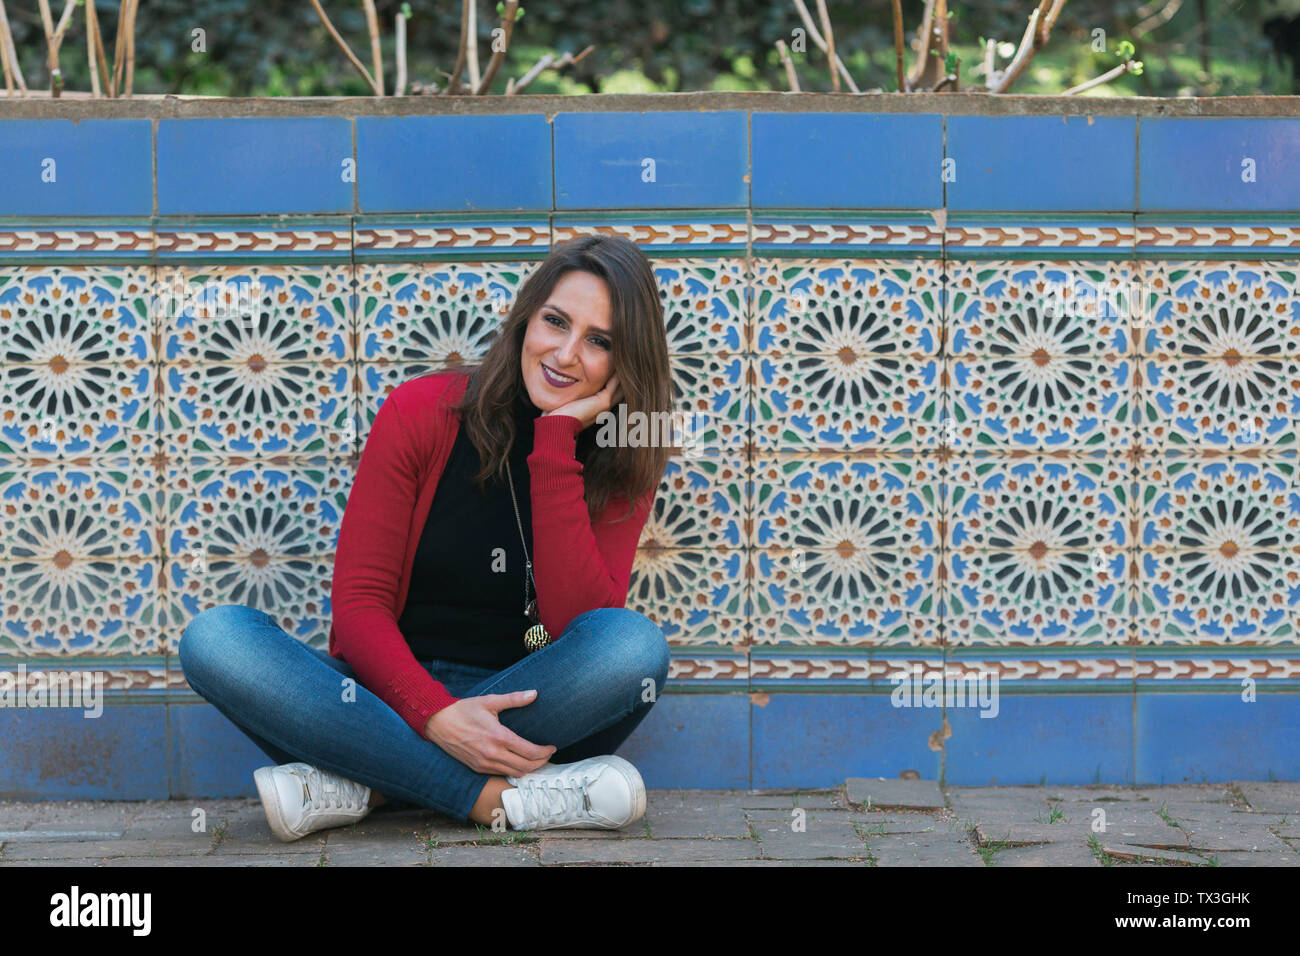 Portrait of smiling woman sitting le long mur de mosaïque Banque D'Images